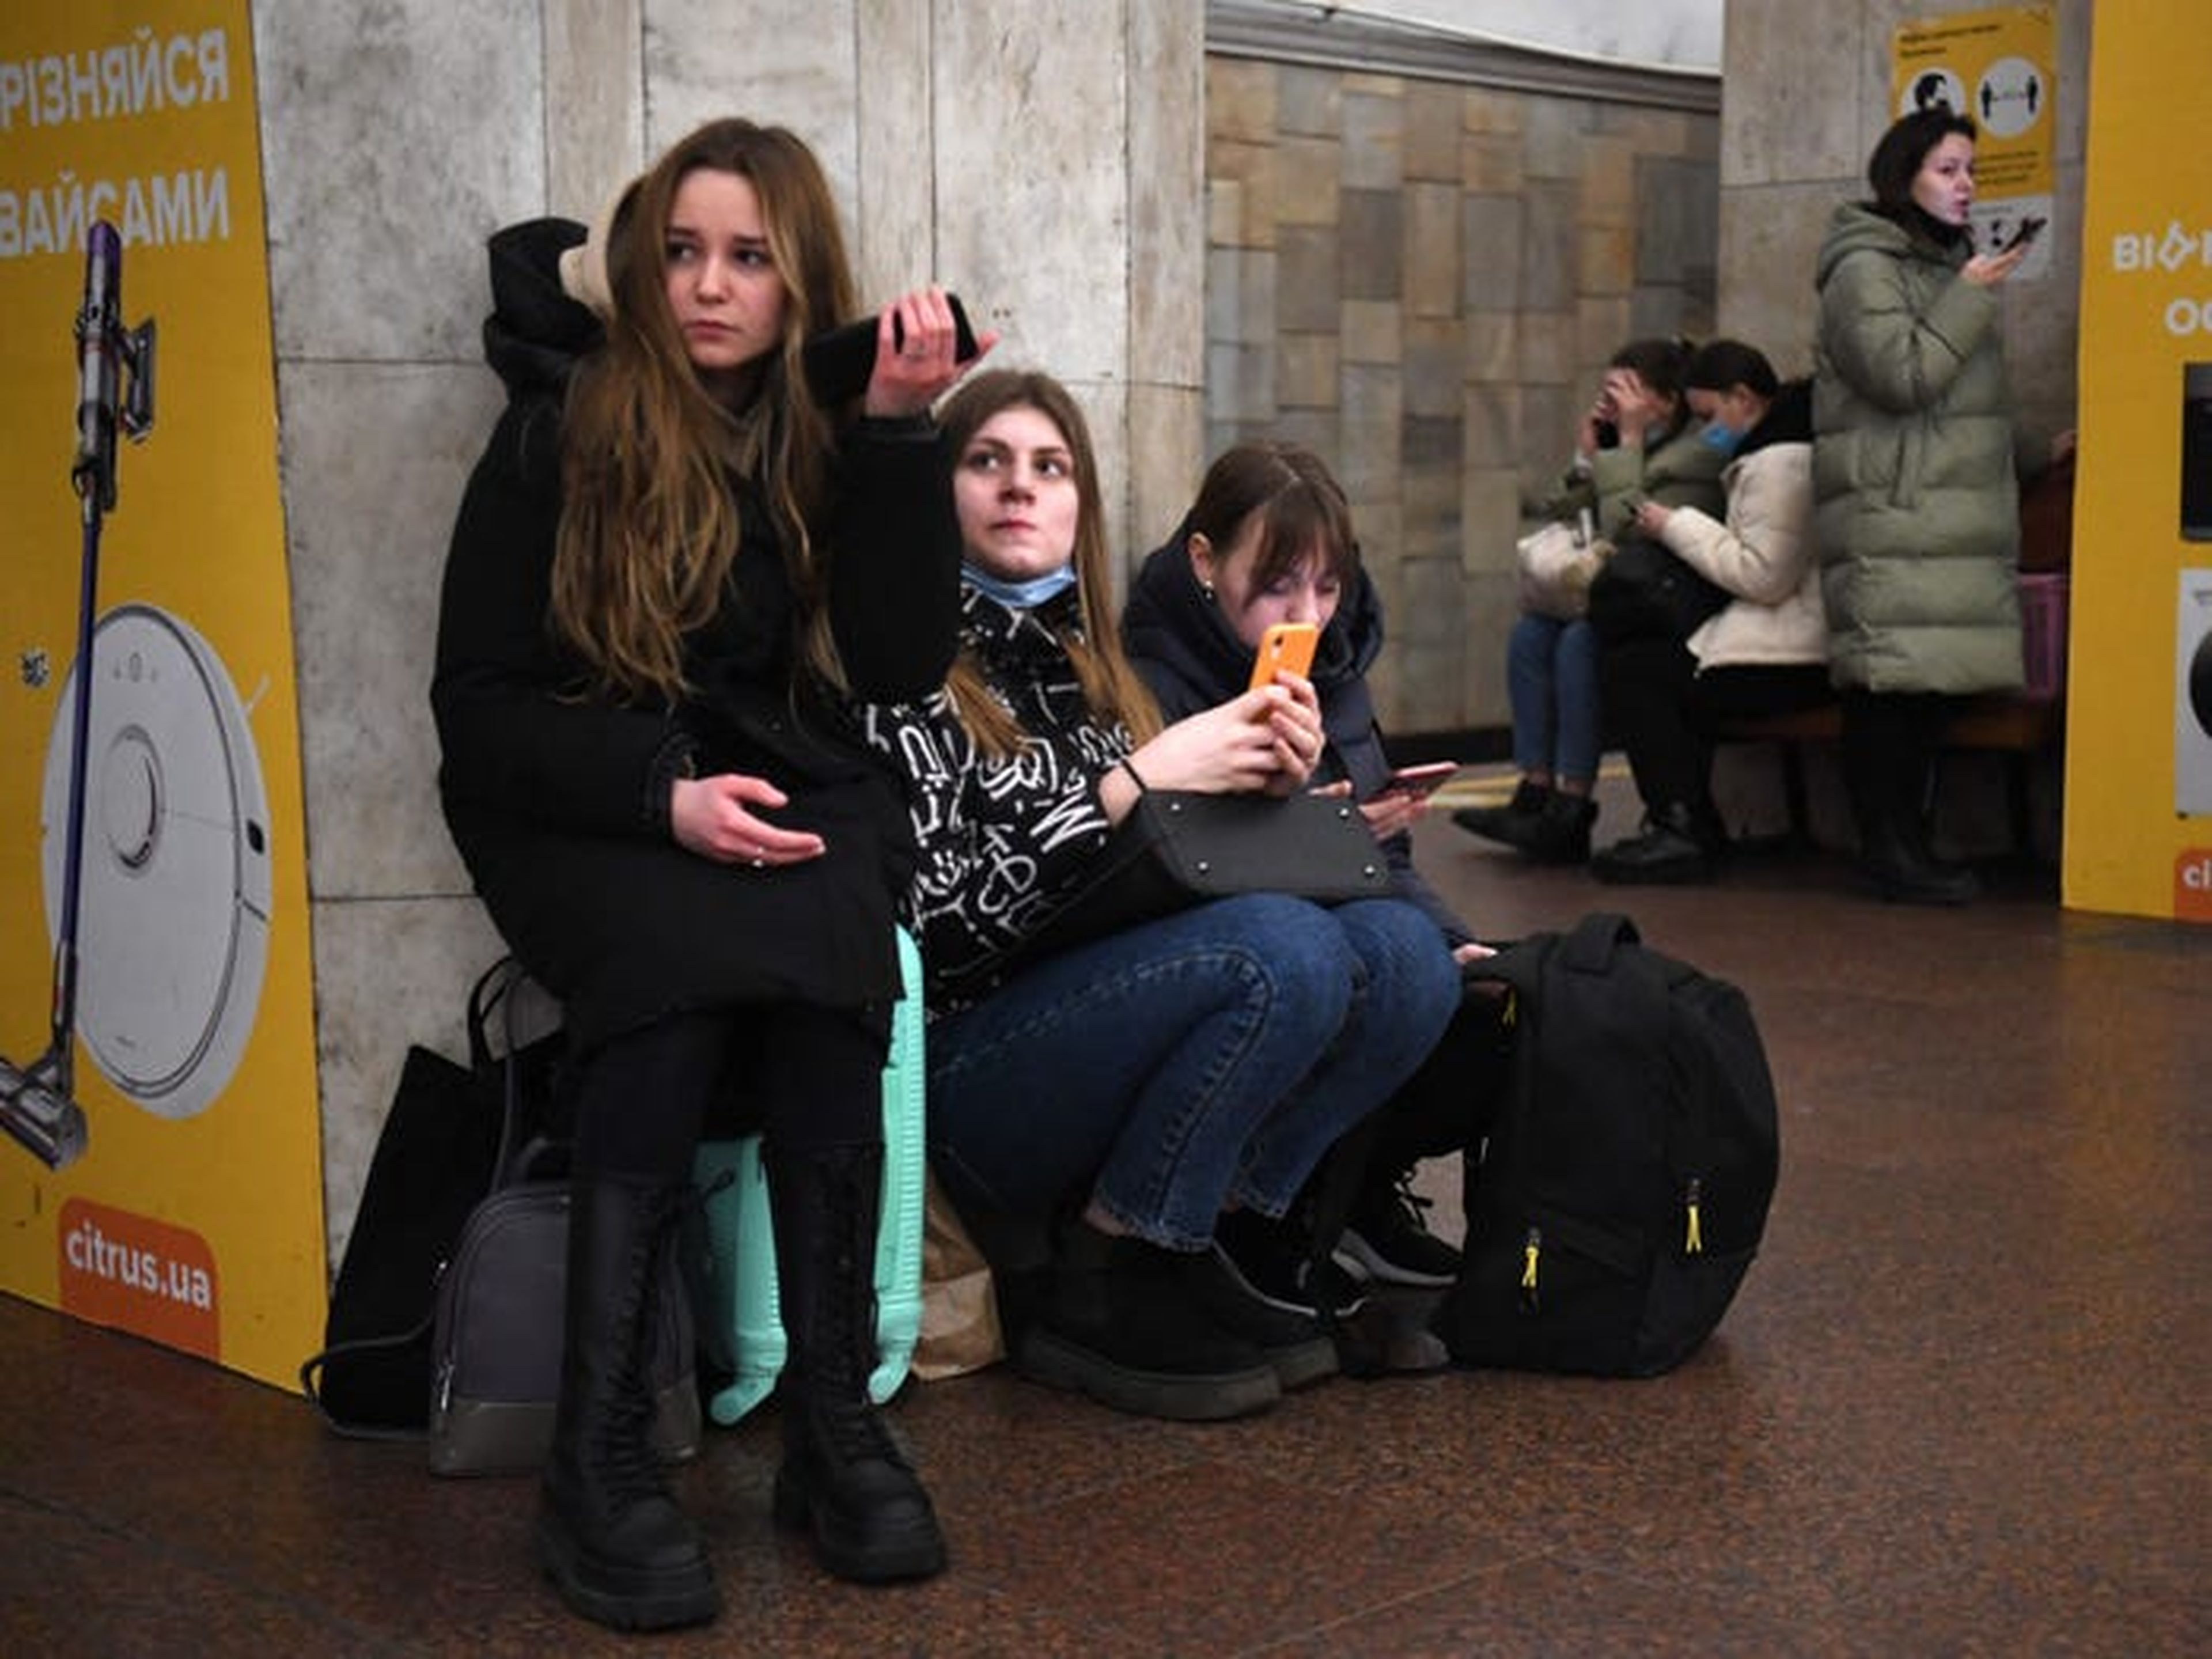 Ciudadanos ucranianos refugiándose en una estación del metro de Kiev el jueves. Putin también ha sostenido que Ucrania ni siquiera es un país real.